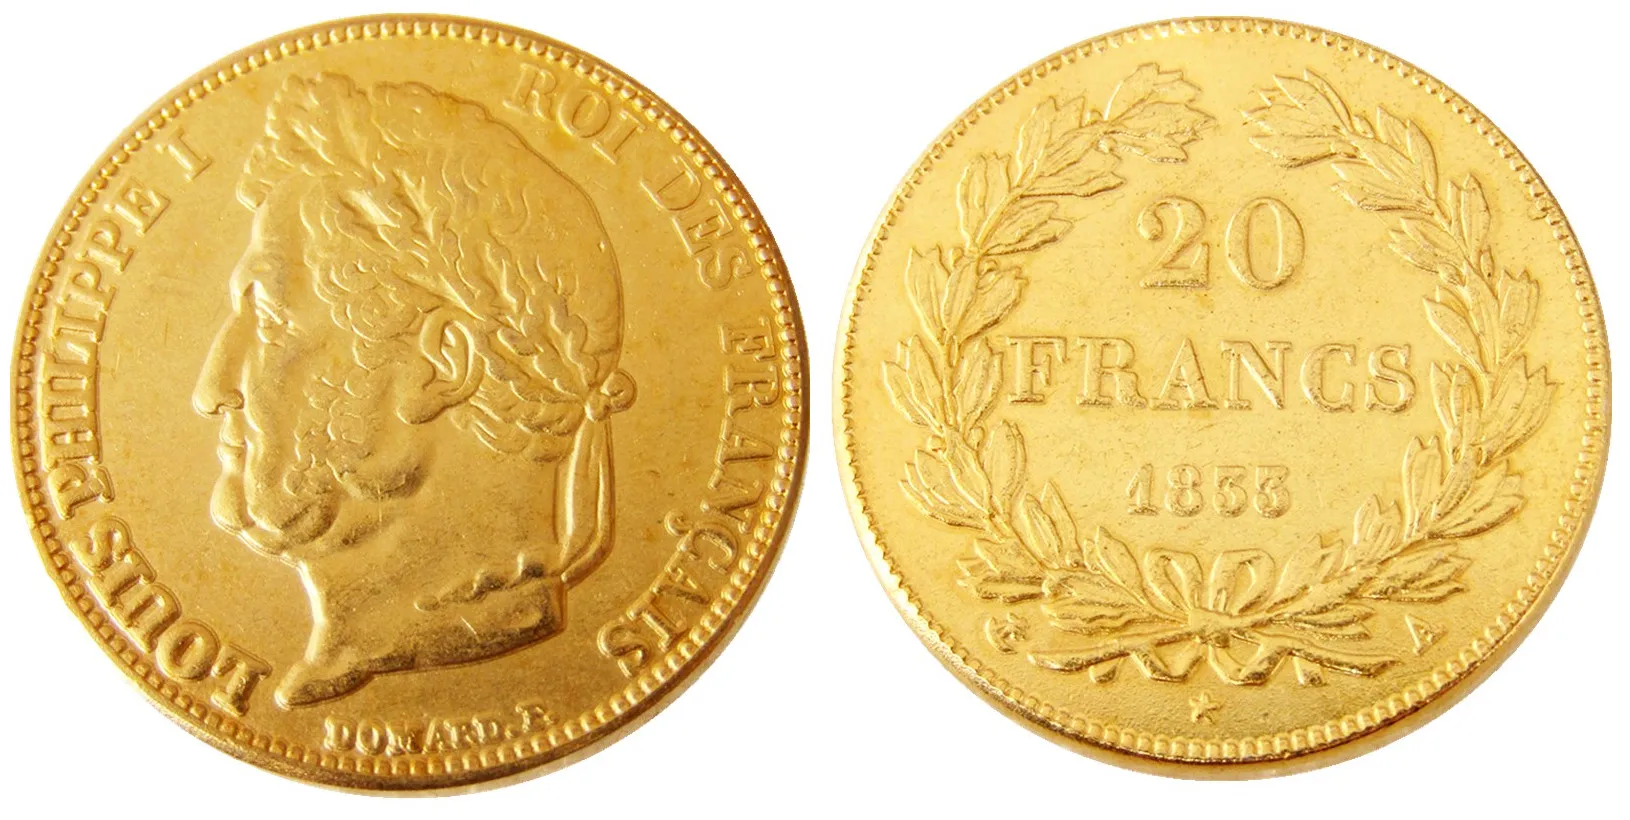 فرنسا 20 فرنسا 1833A/B الذهب مطلي نسخة زخرفية المعادن المعادن يموت أسعار مصنع التصنيع